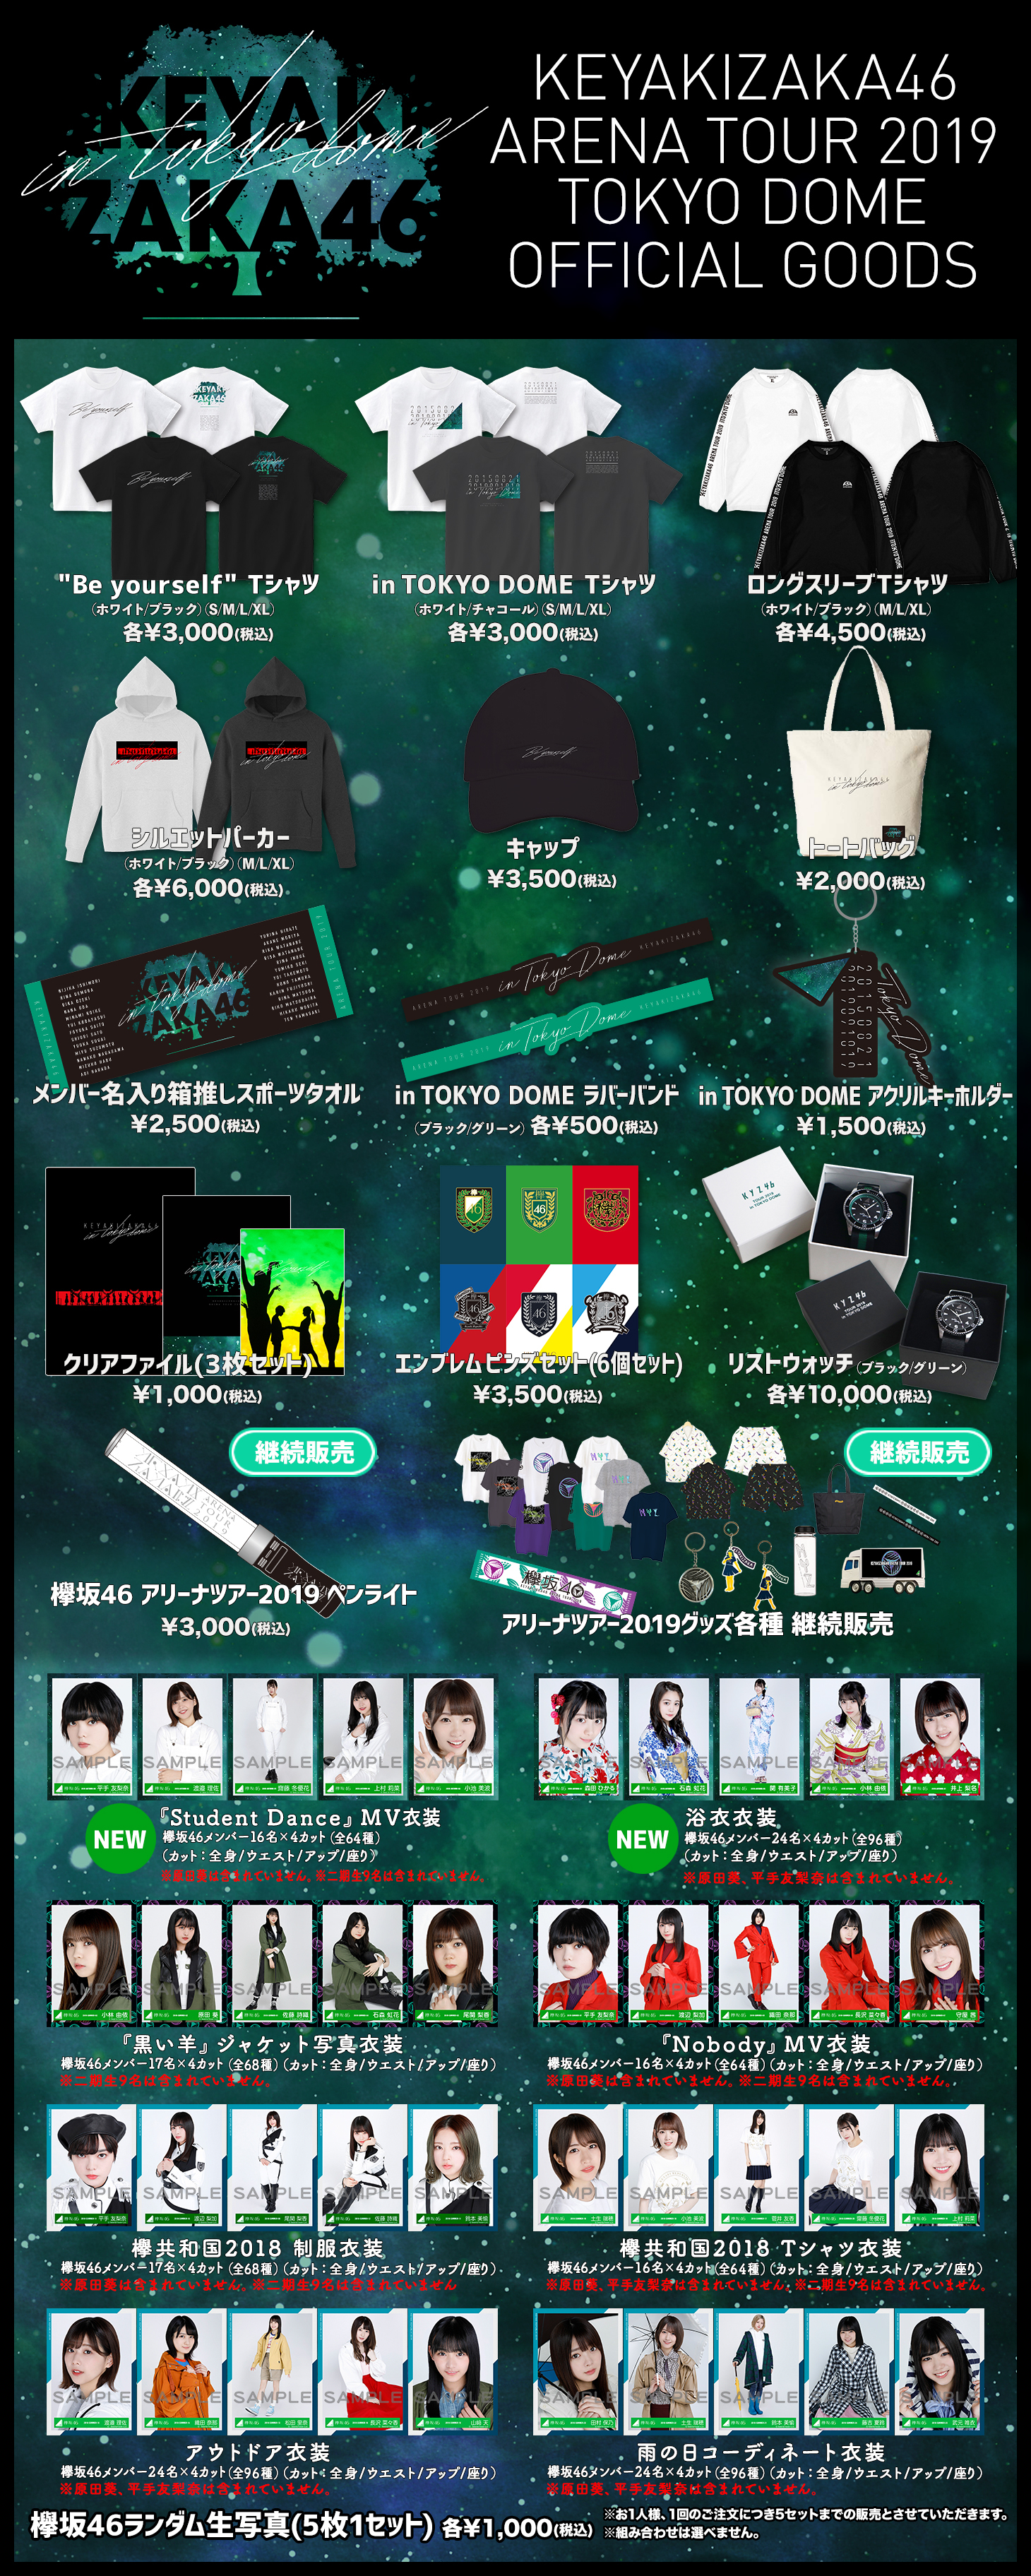 欅坂46 東京ドーム2days公演 オフィシャルグッズ販売のお知らせ 